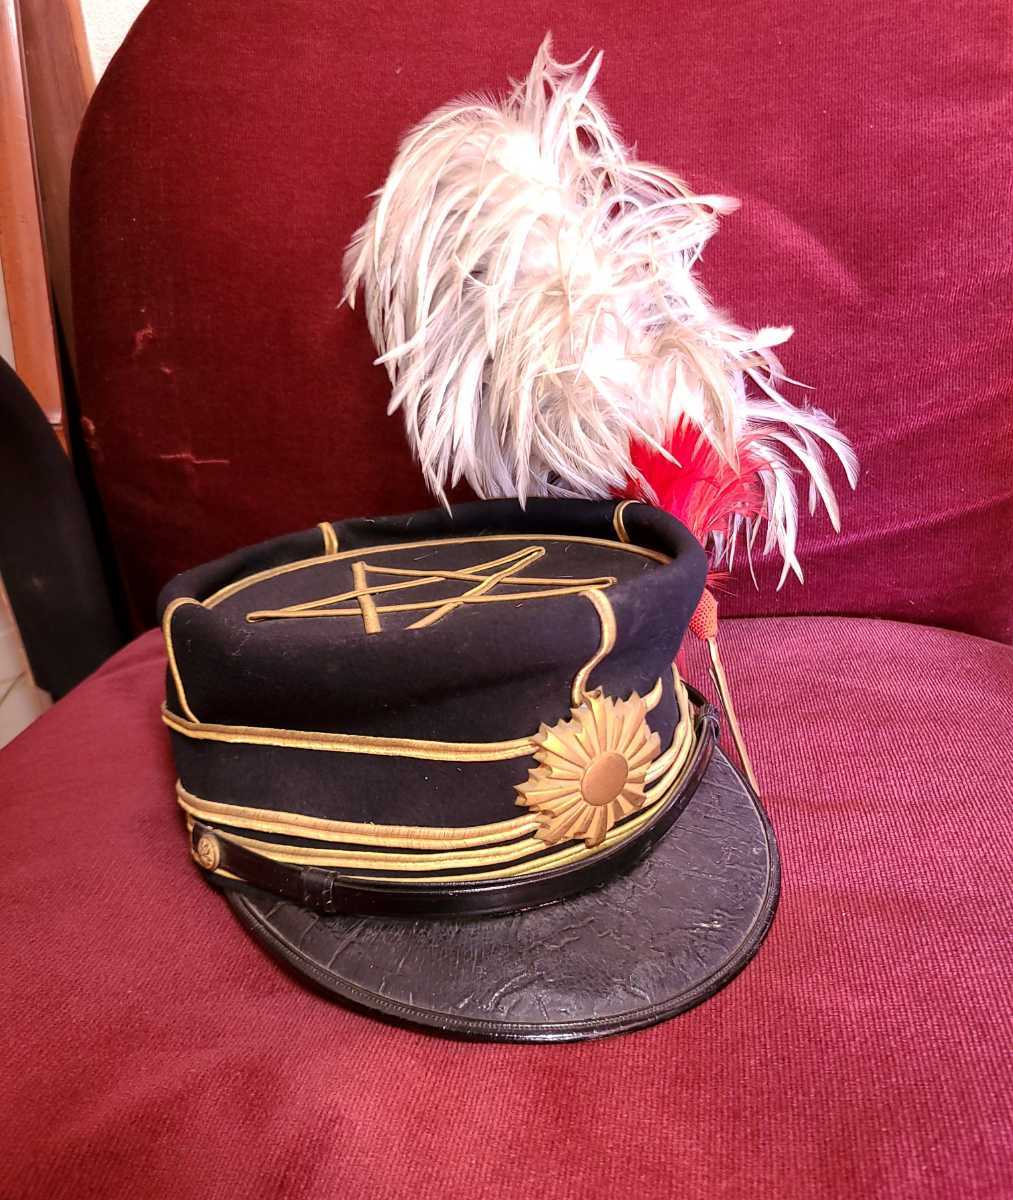 Yahoo!オークション - 旧日本陸軍 大礼帽 軍服 軍帽 帽子 羽根飾り付き